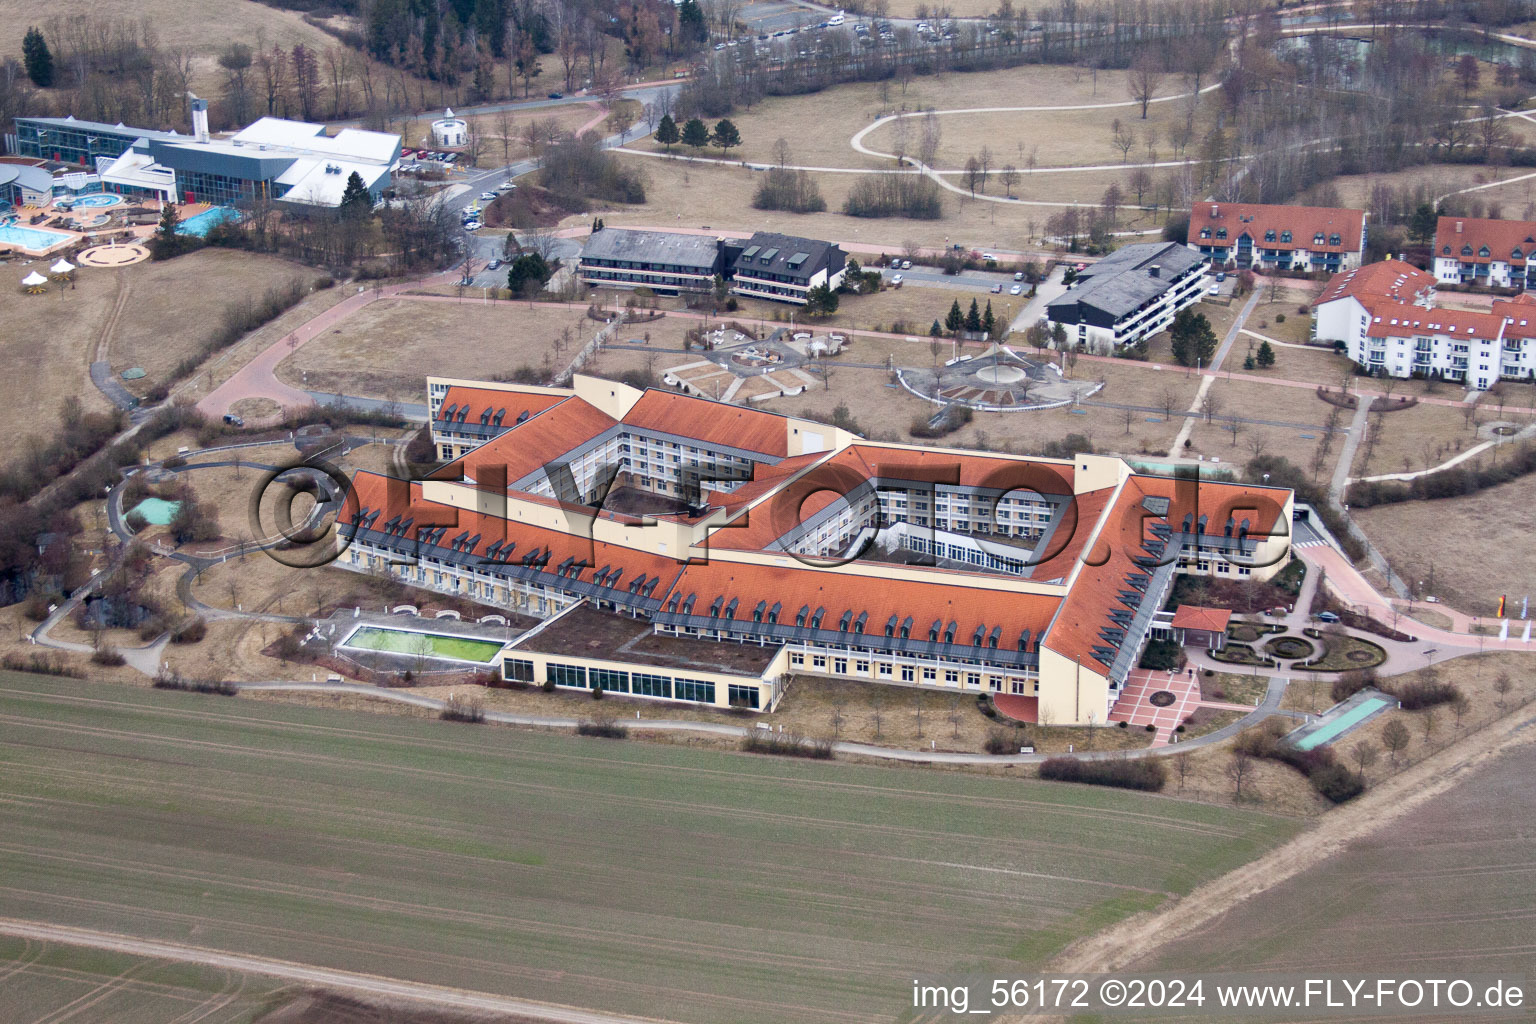 Vue aérienne de Terrain de l'hôpital Medical Park Bad Rodach à Bad Rodach dans le département Bavière, Allemagne